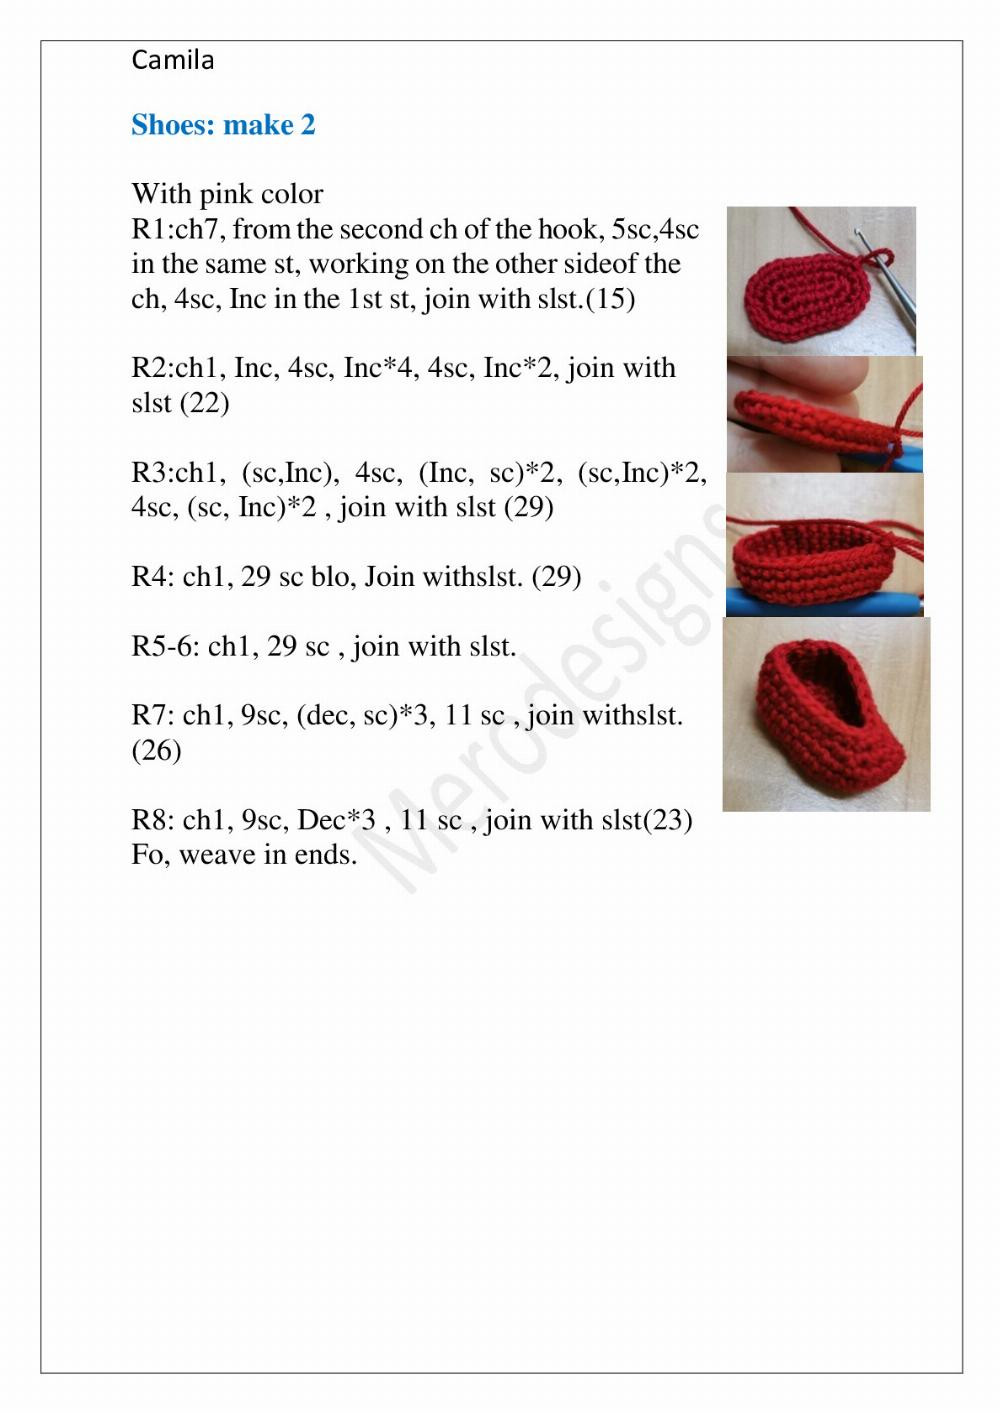 Camila Camila crochet pattern